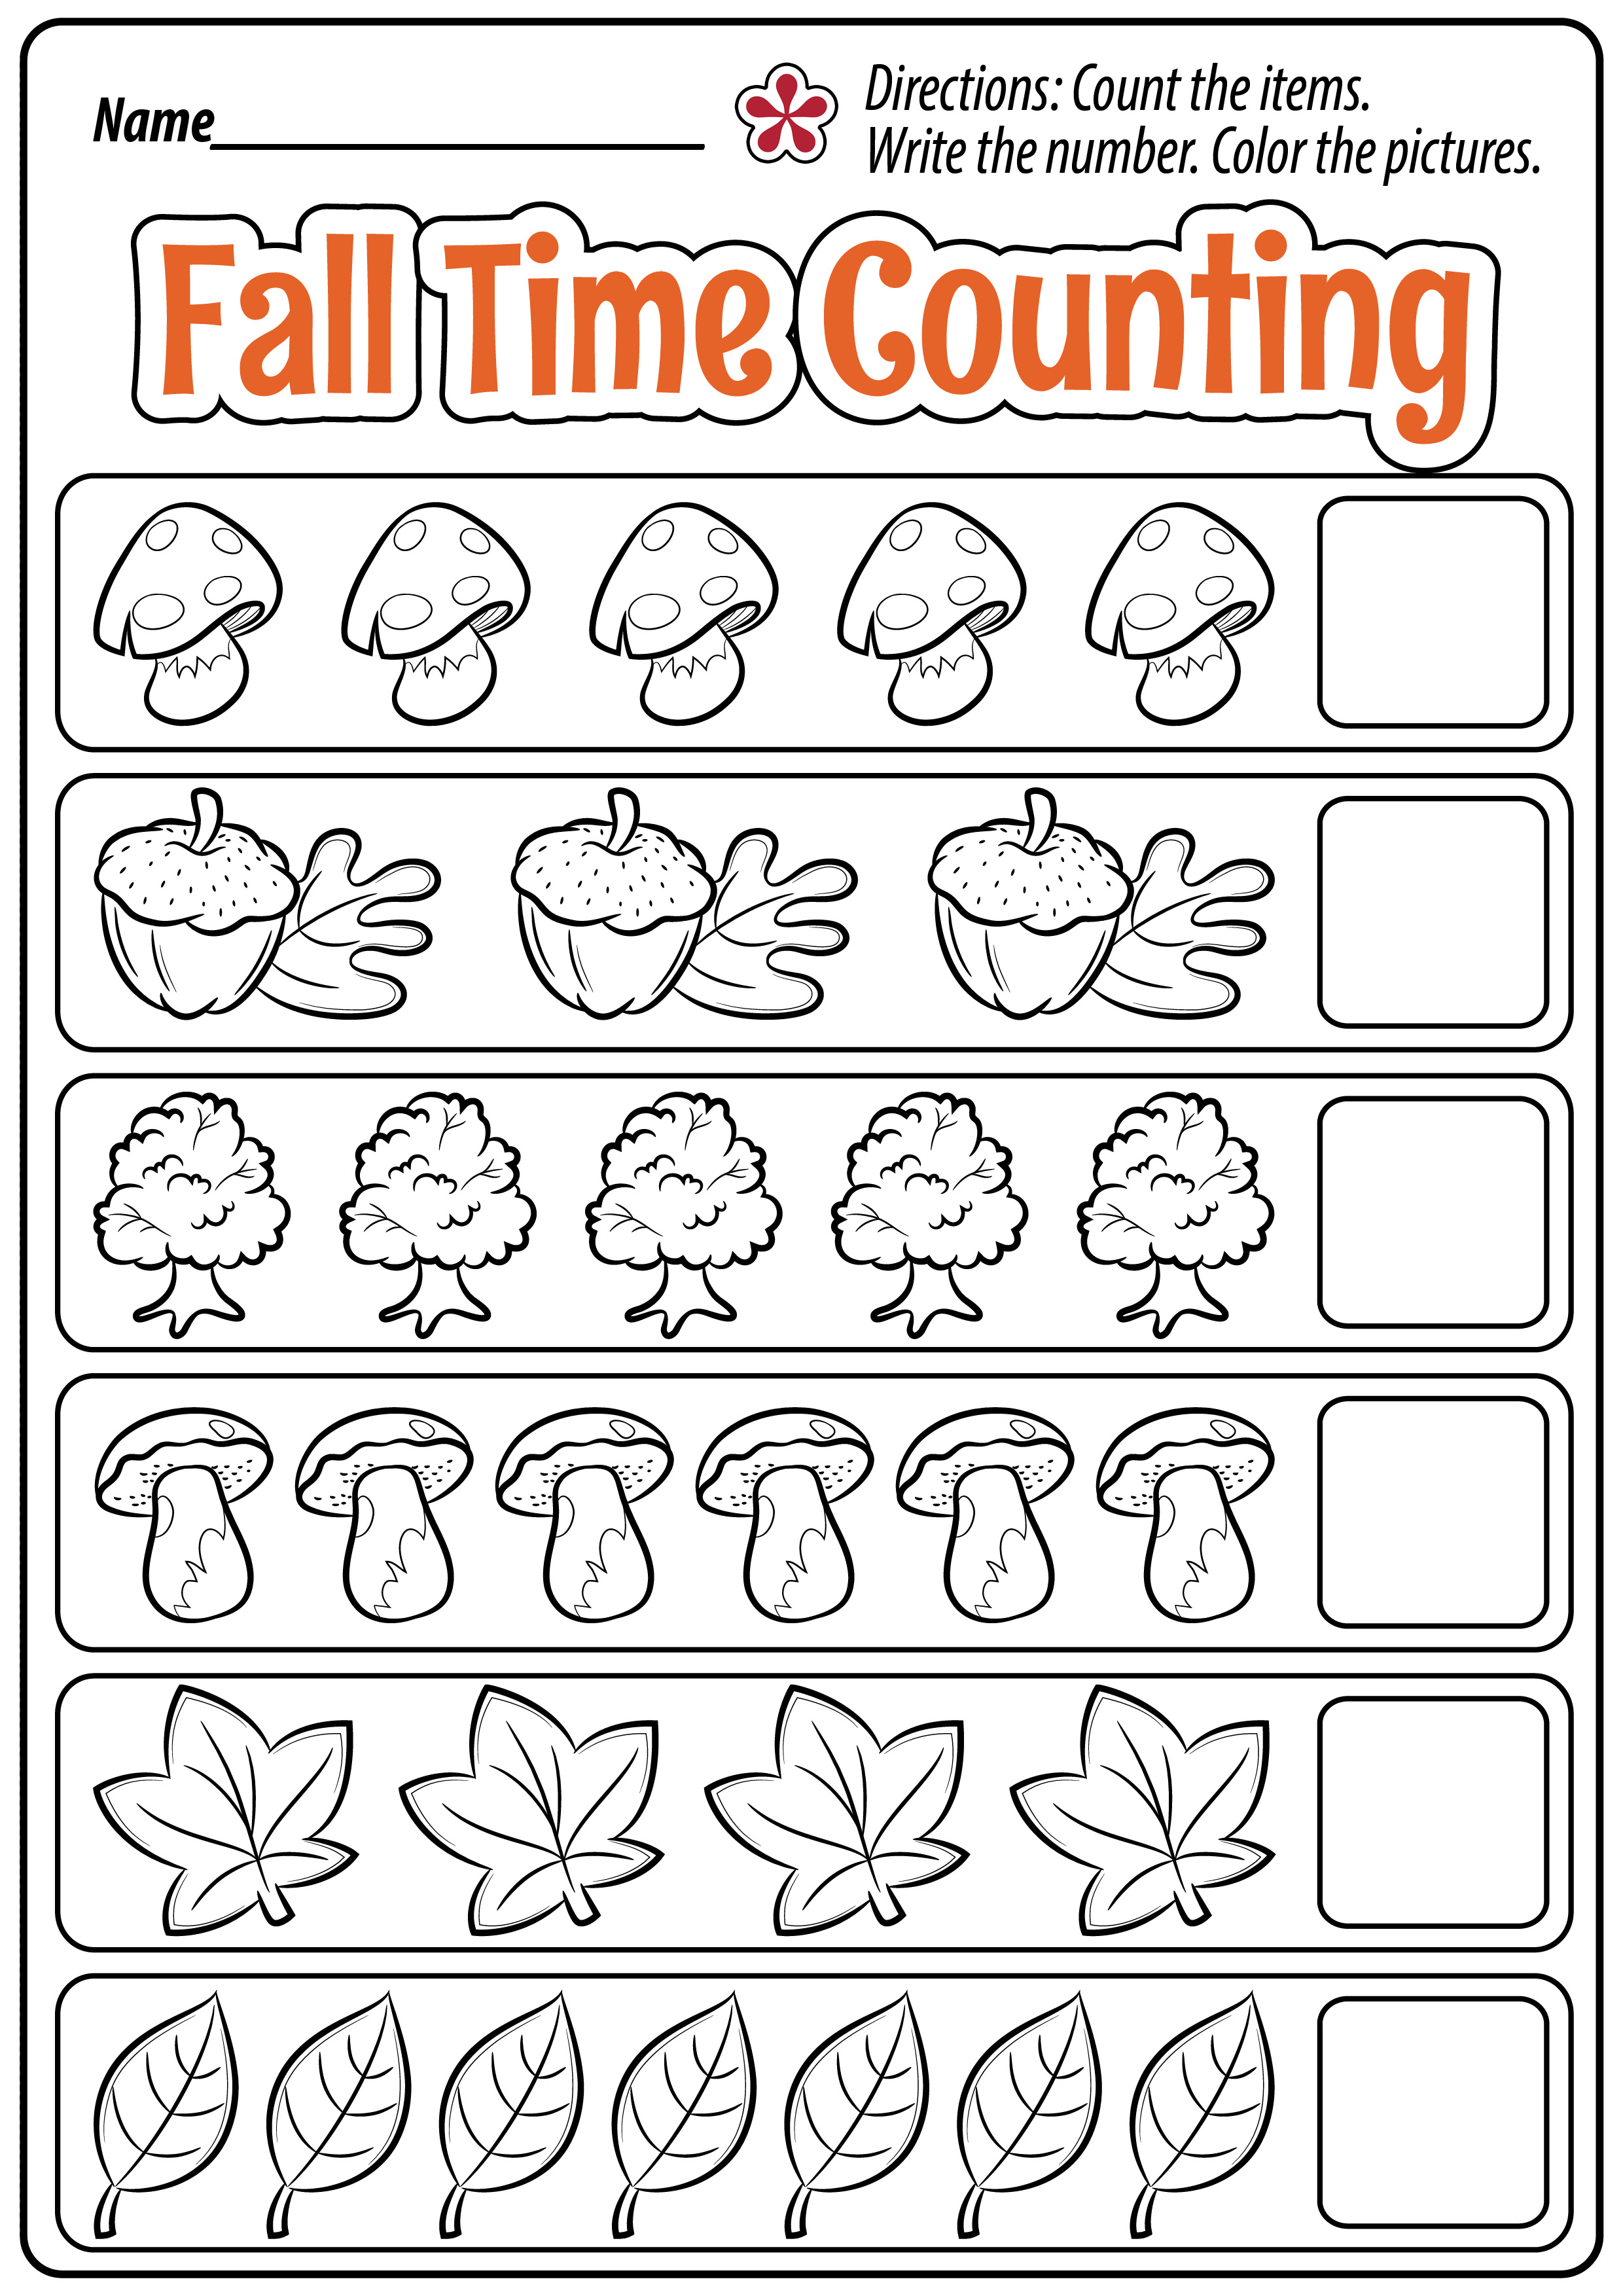 counting-kindergarten-worksheets